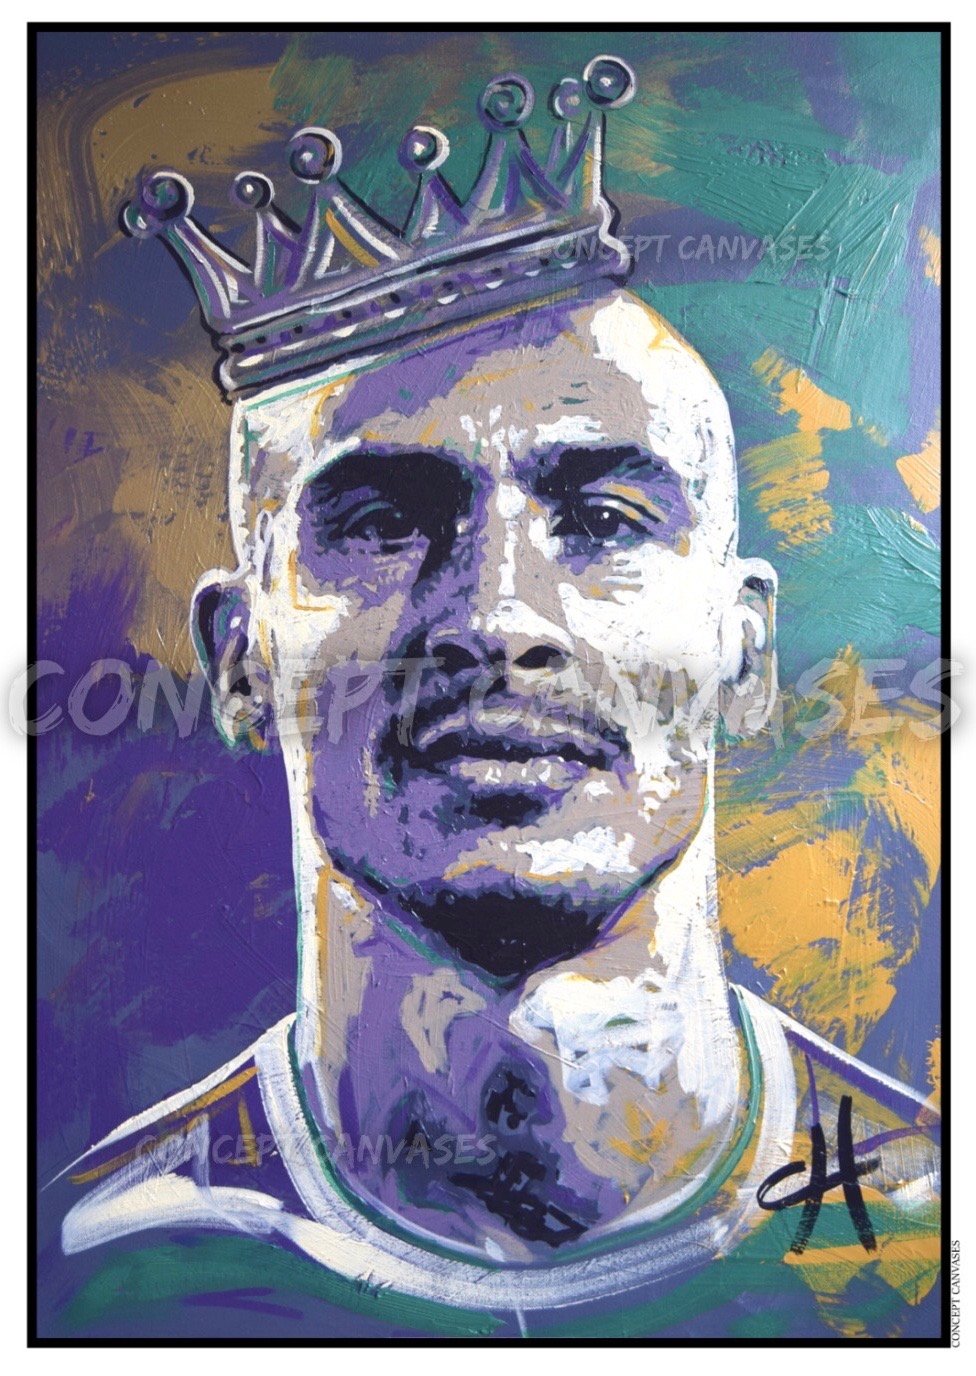 Image of Henrik Larsson ‘Crowned King’ A3 Print 